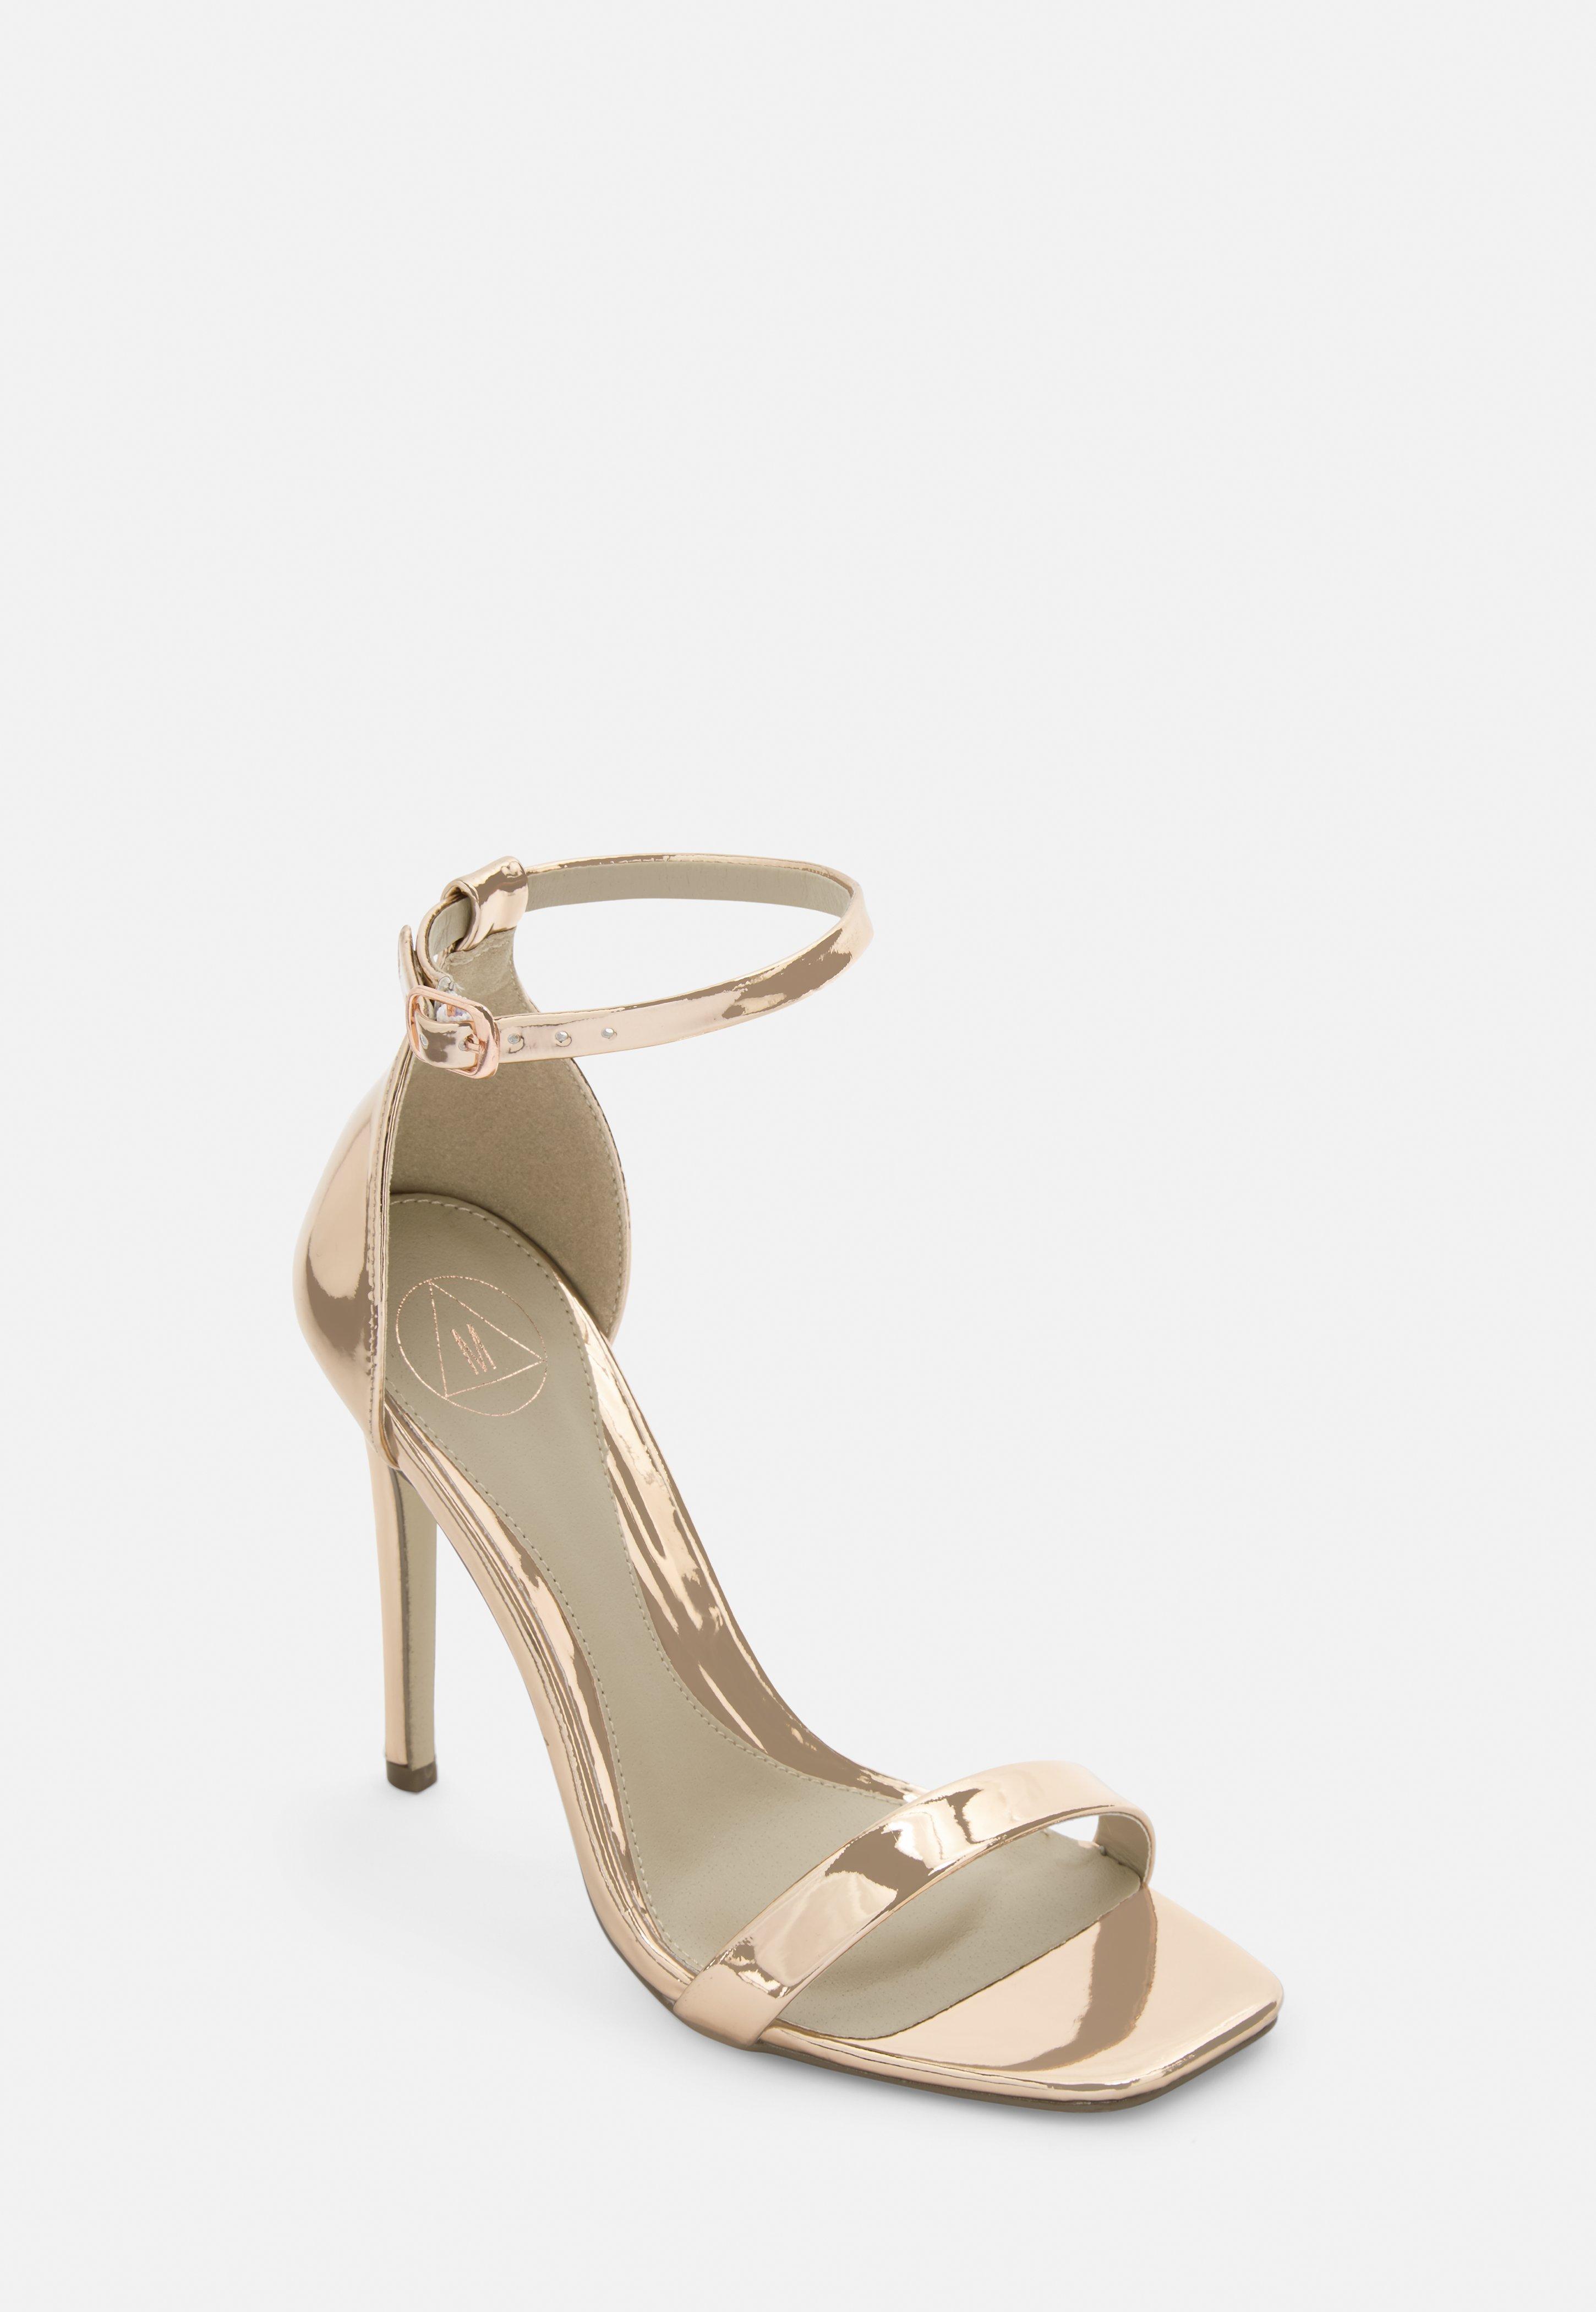 rose gold wide heels